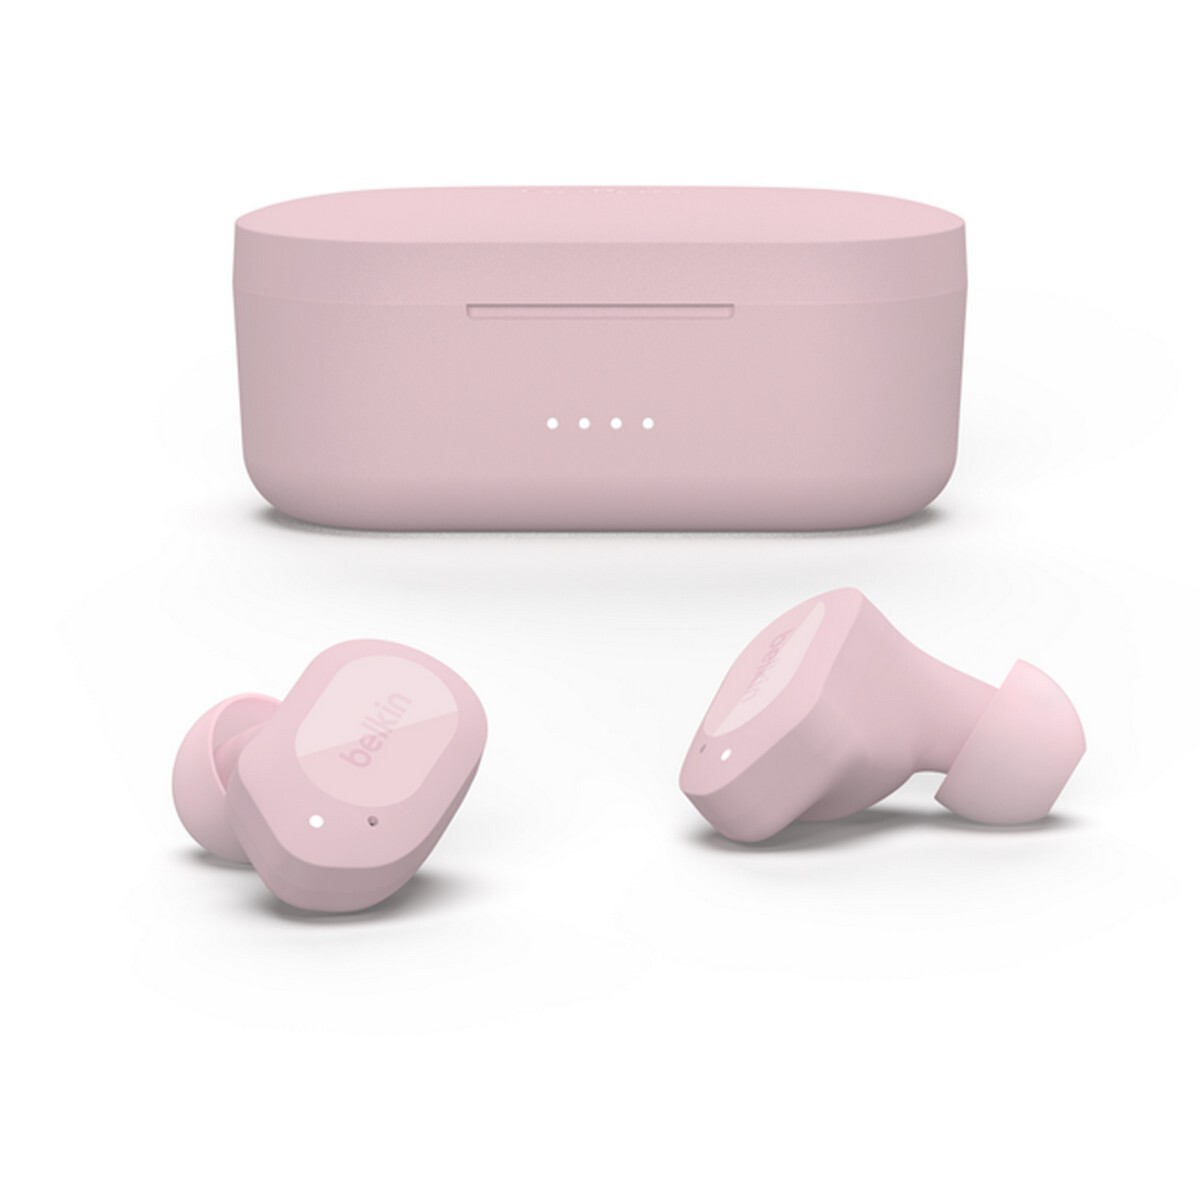 Belkin Soundform Play True Wireless Earphones Pink